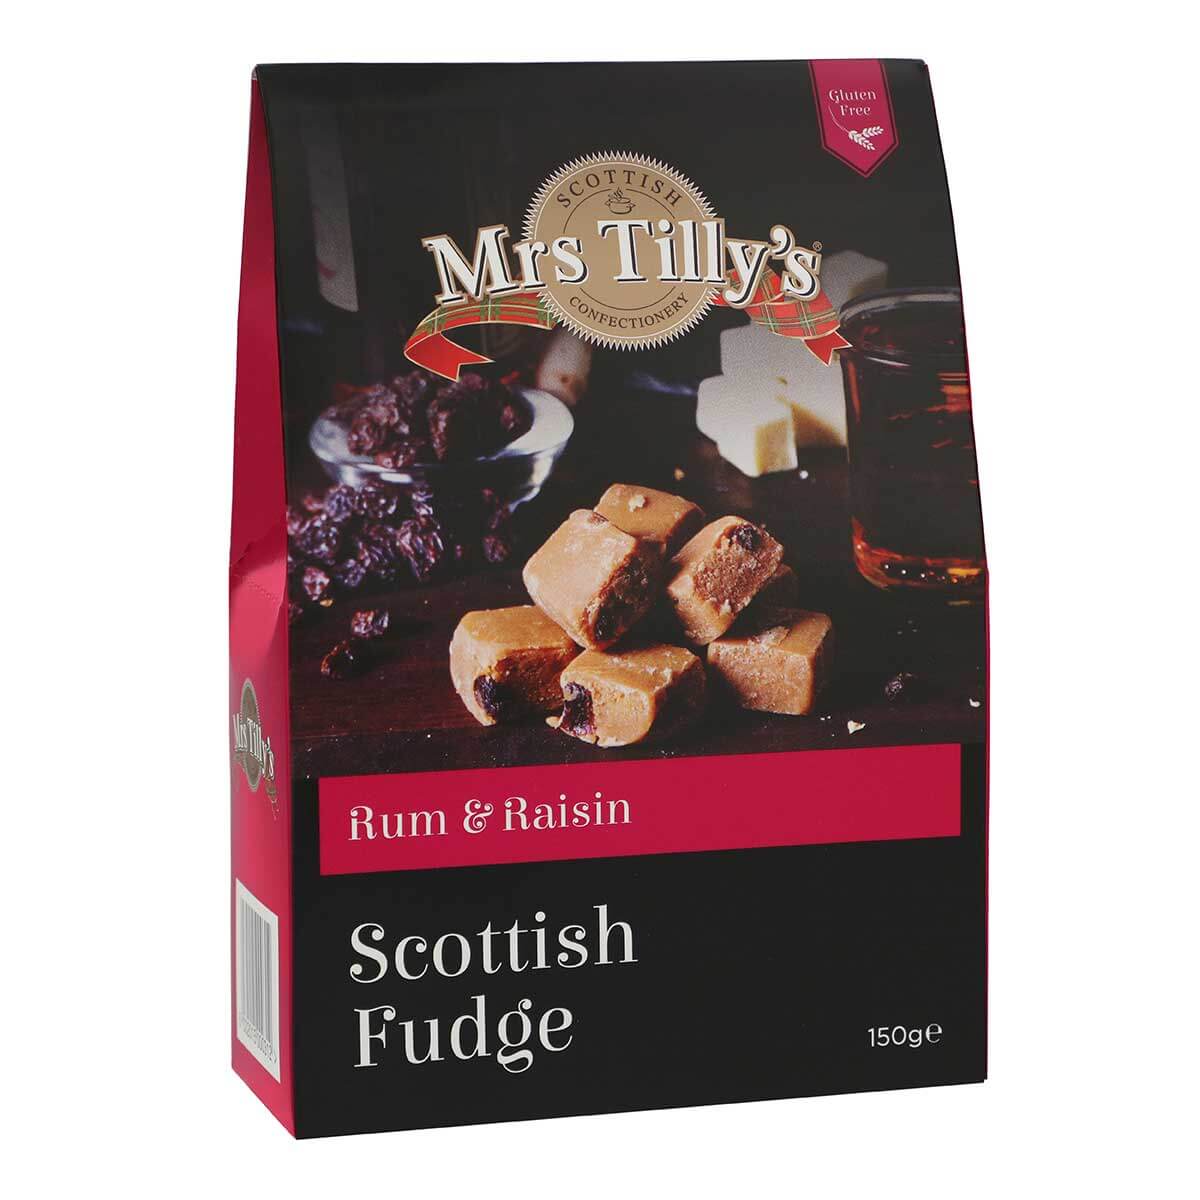 Rum & Raisin Scottish Fudge Gift Box 150g